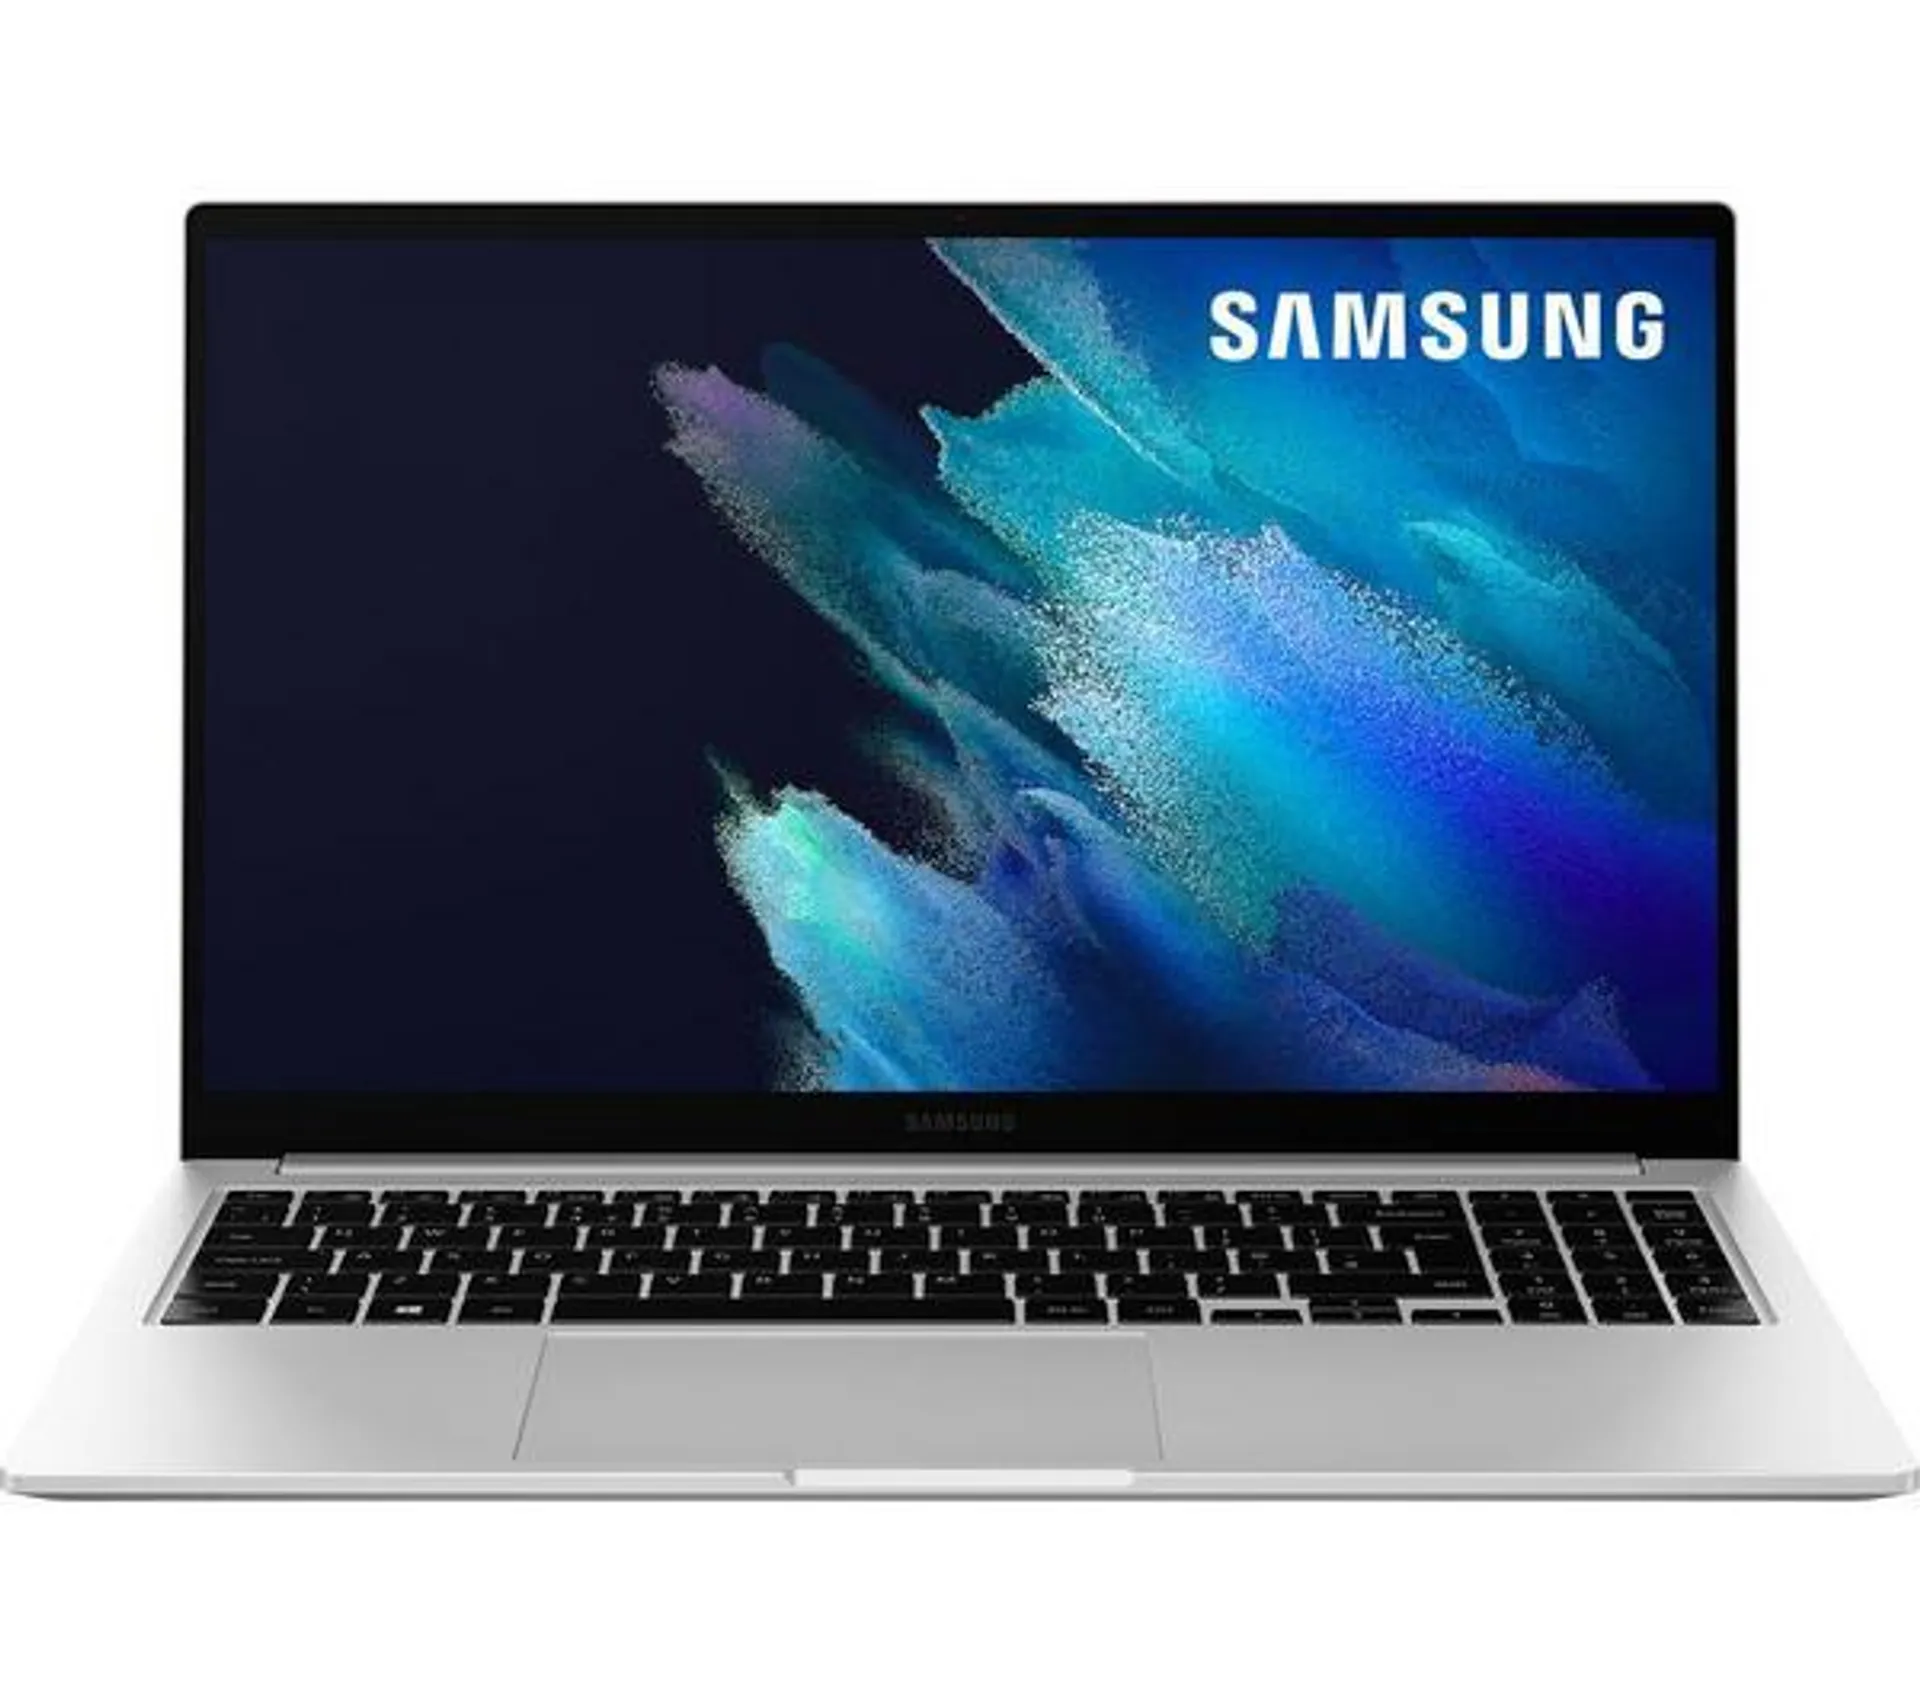 SAMSUNG Galaxy Book Go 14" Laptop - Qualcomm Snapdragon 7C, 128 GB SSD, Mystic Silver